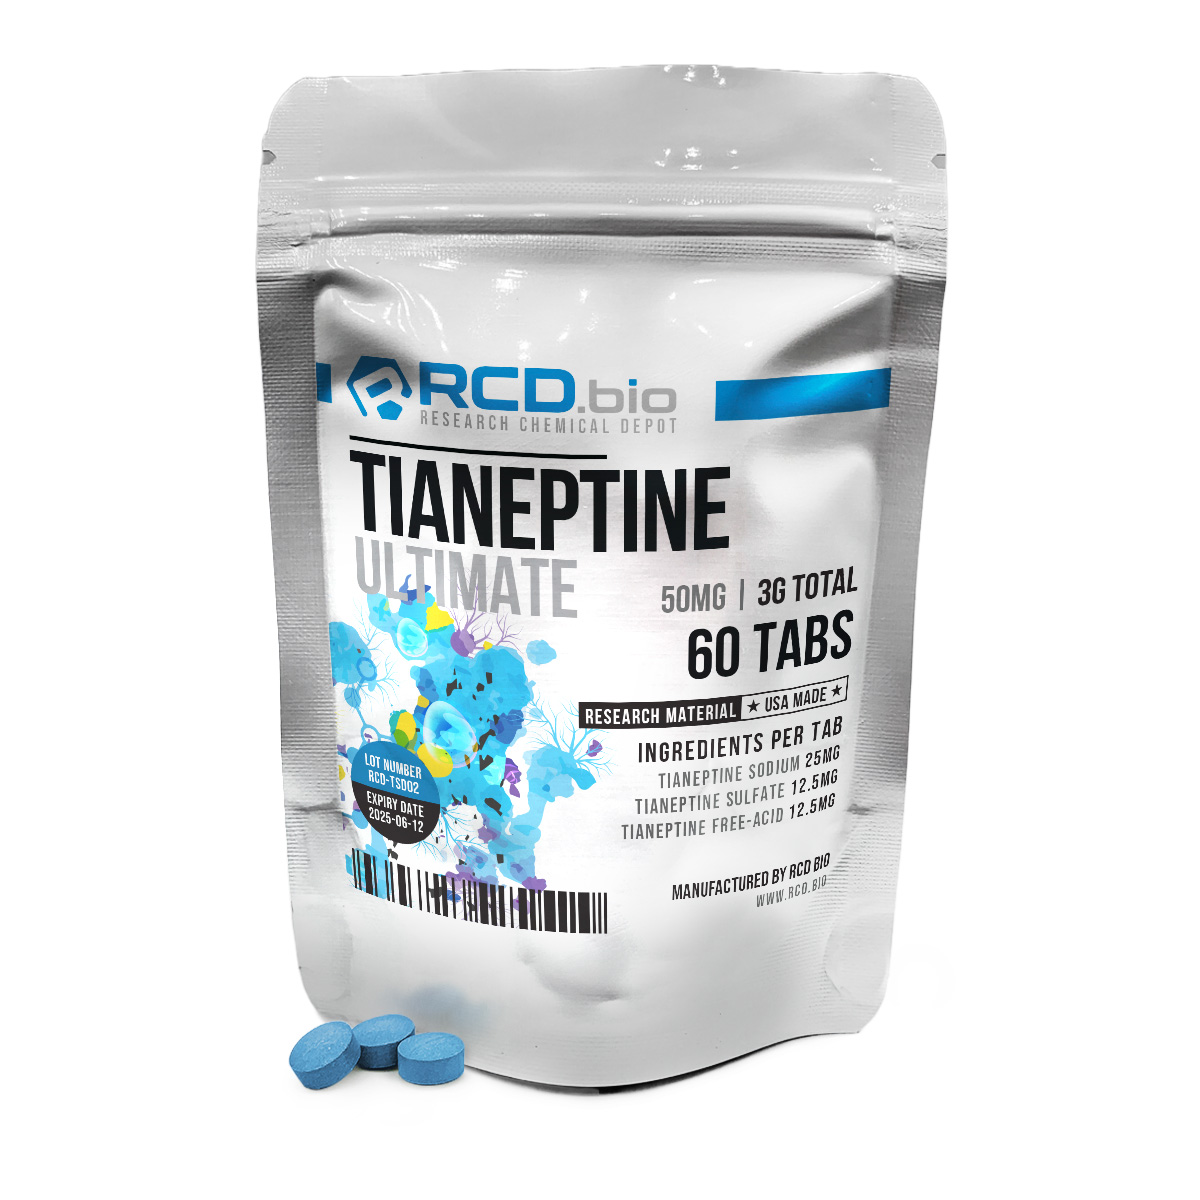 Tianeptine-Ultimate-60mg-30ct_NU